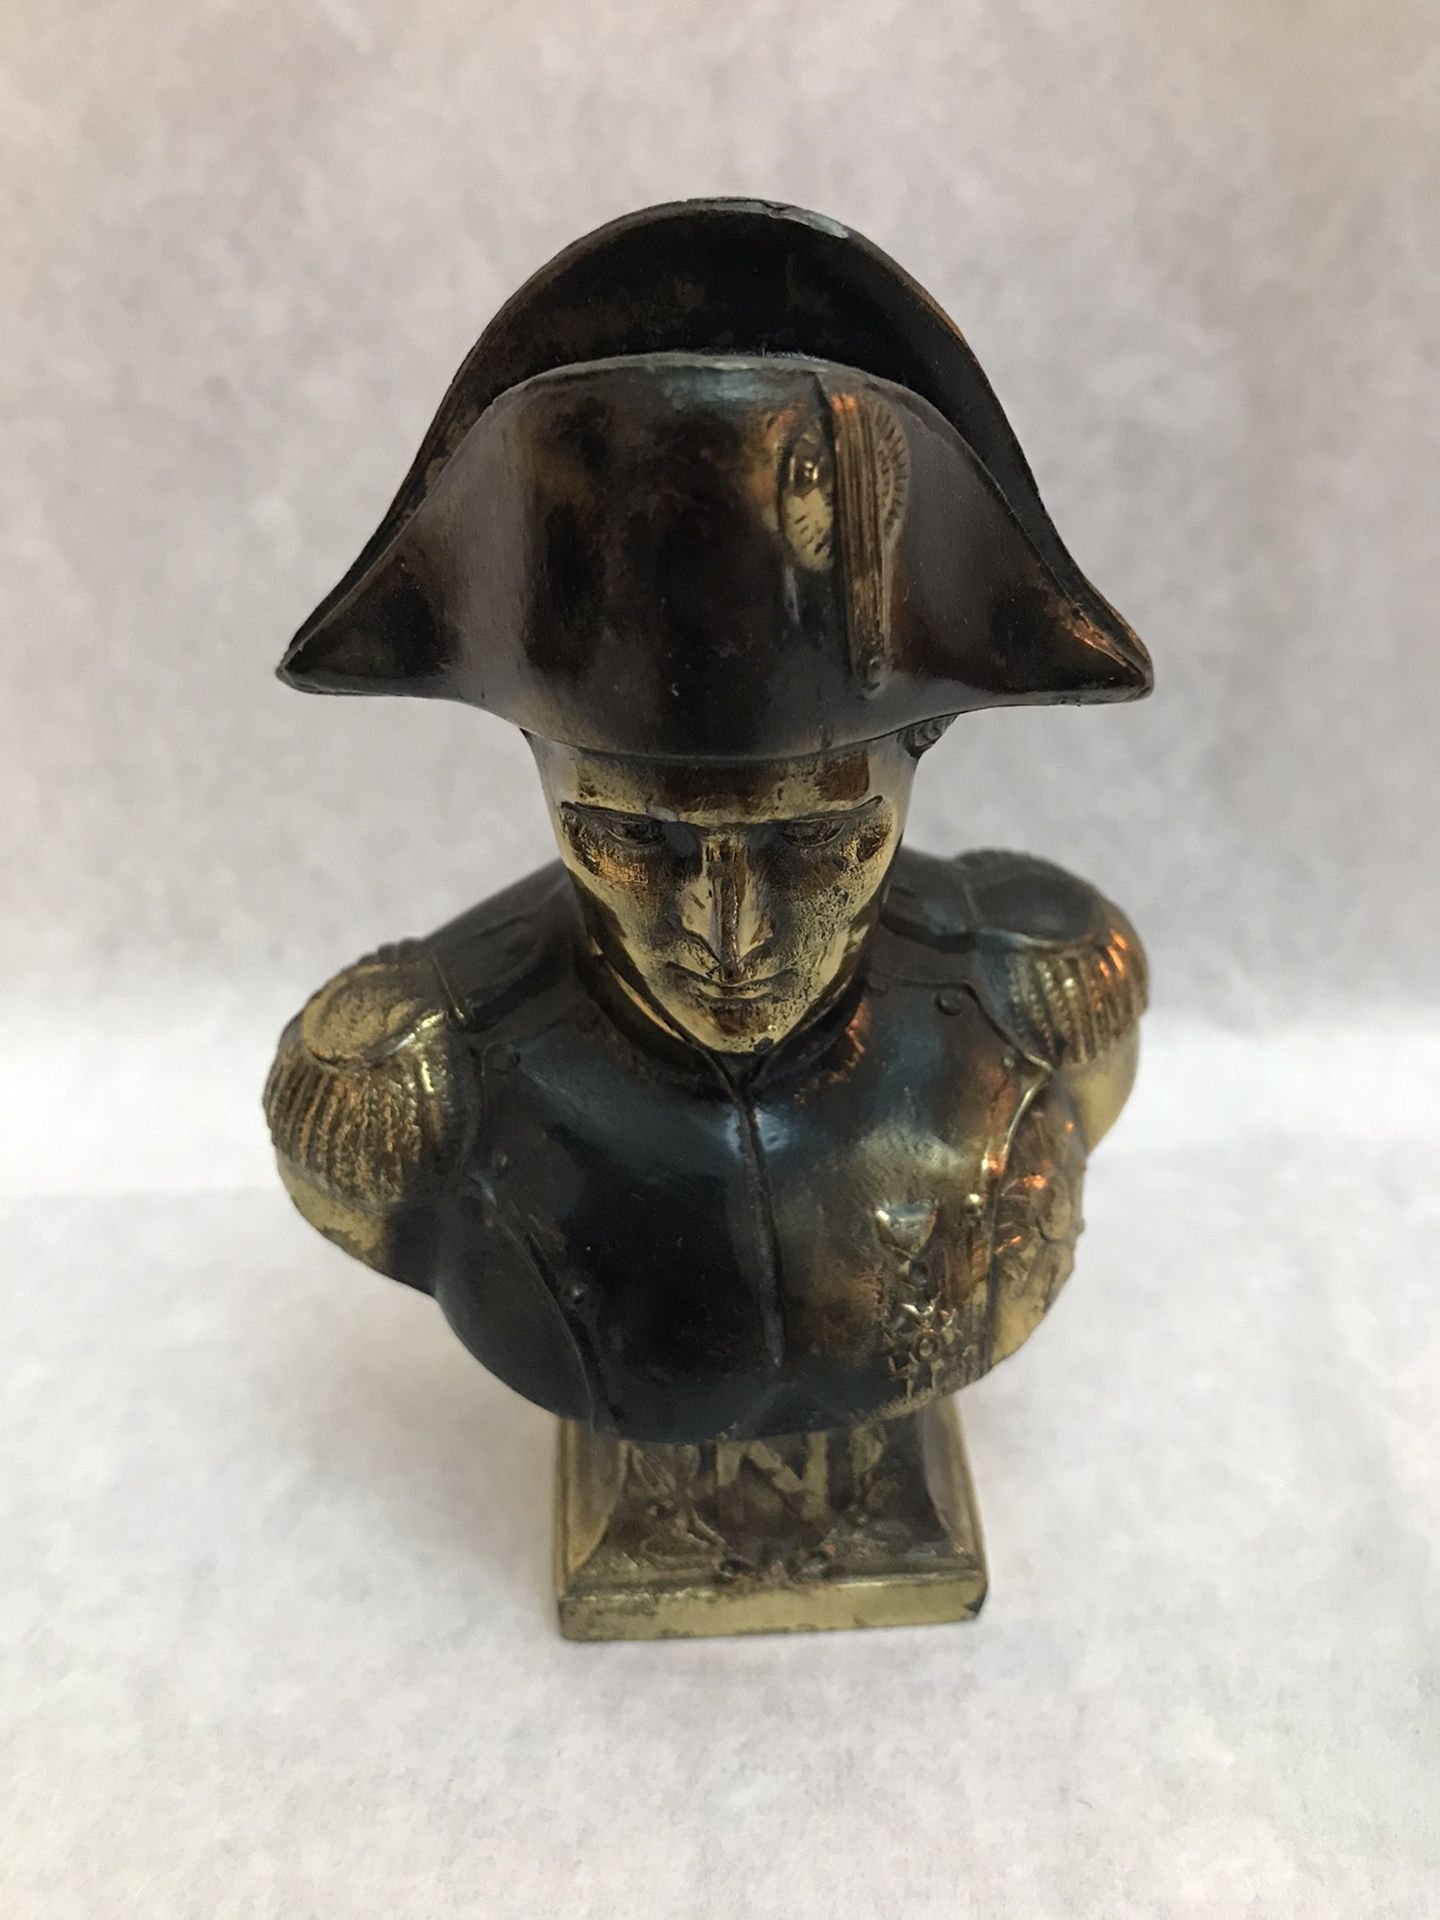 Brass plated soldier figurine